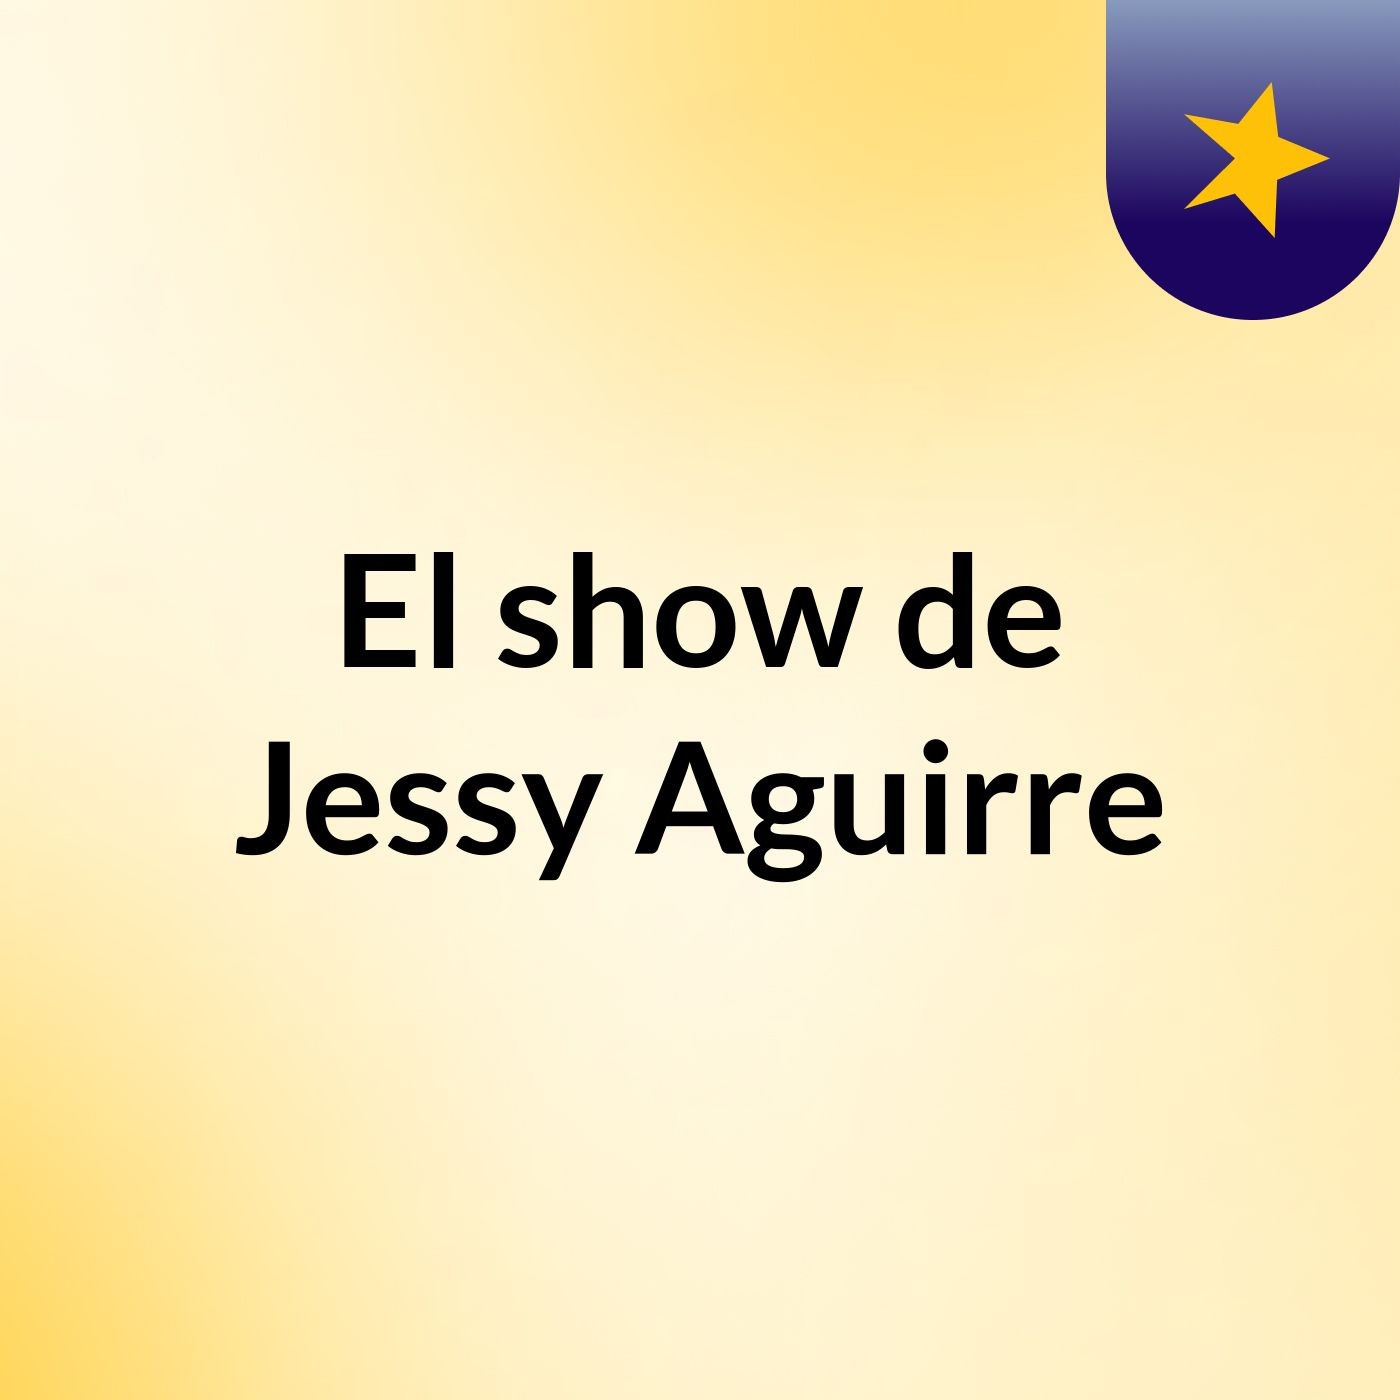 El show de Jessy Aguirre